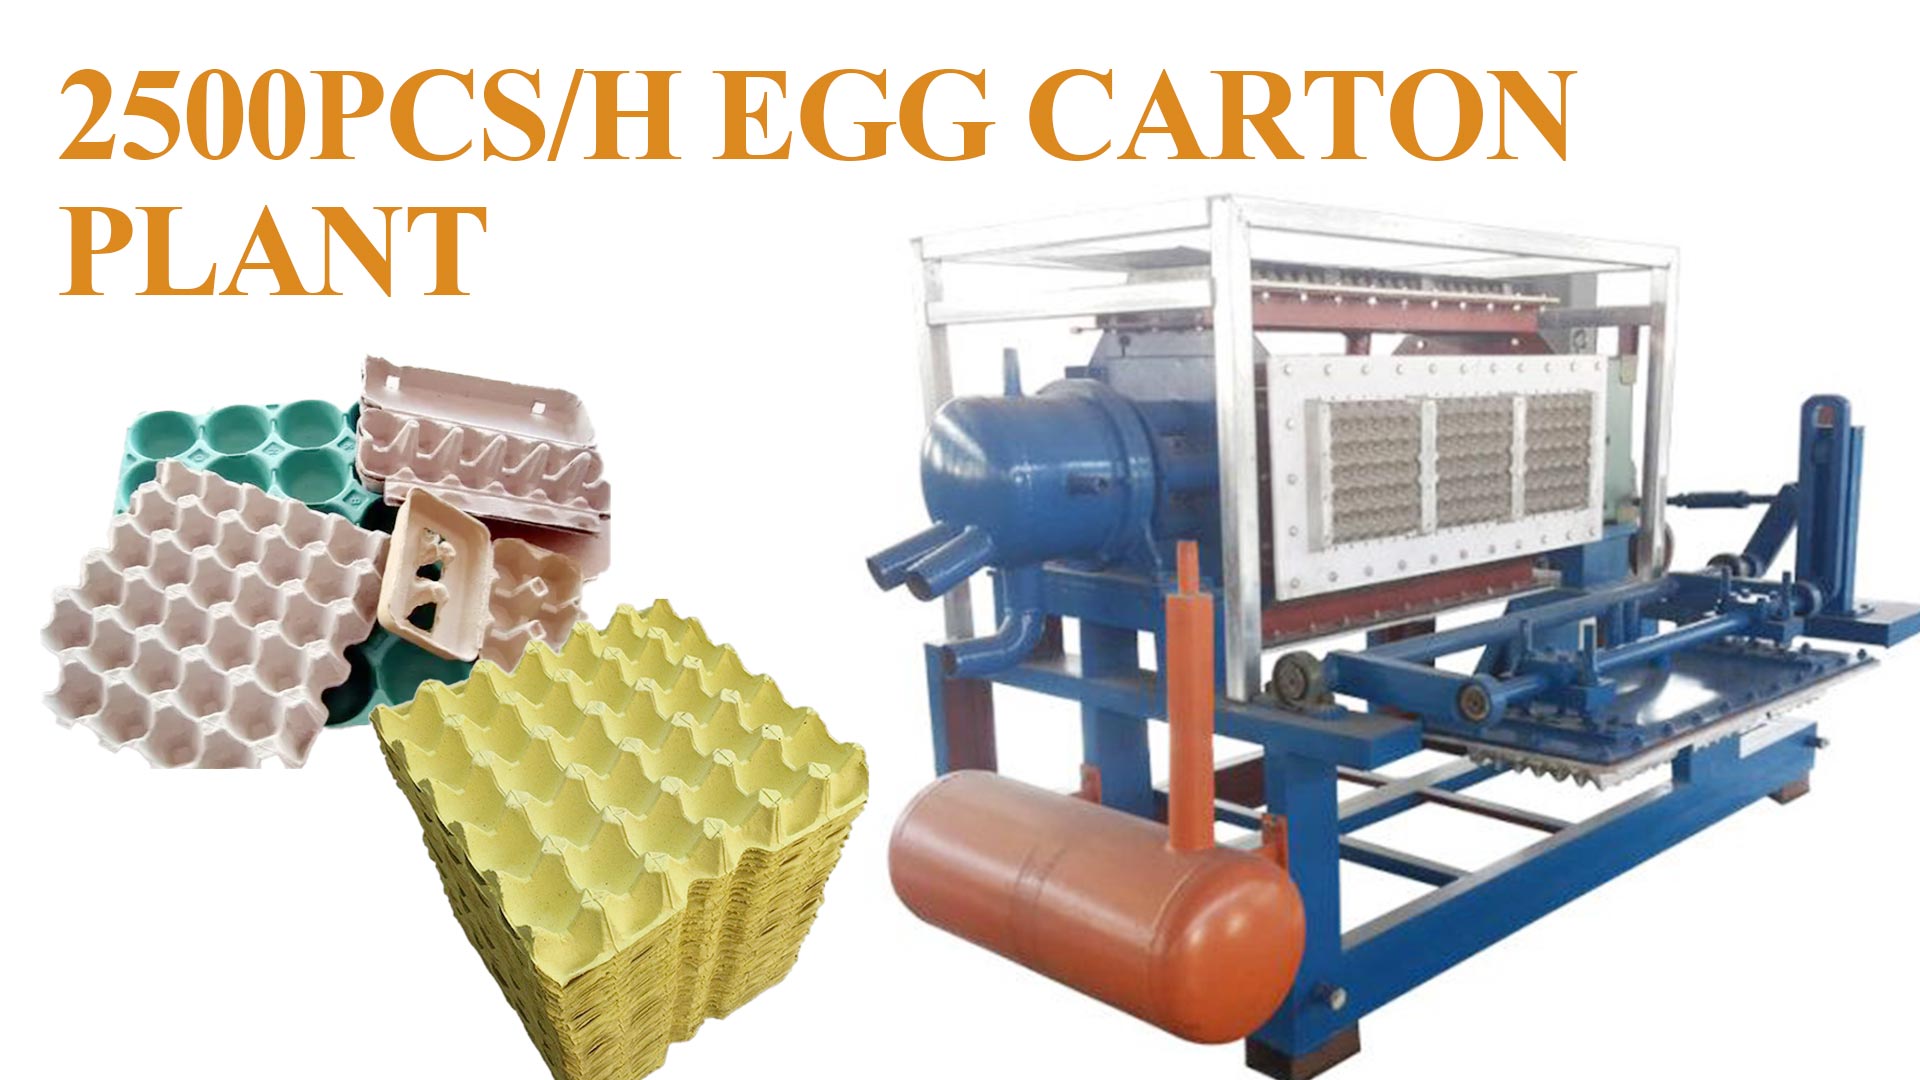 Planta de procesamiento de cajas de huevos 2500pcs/h 